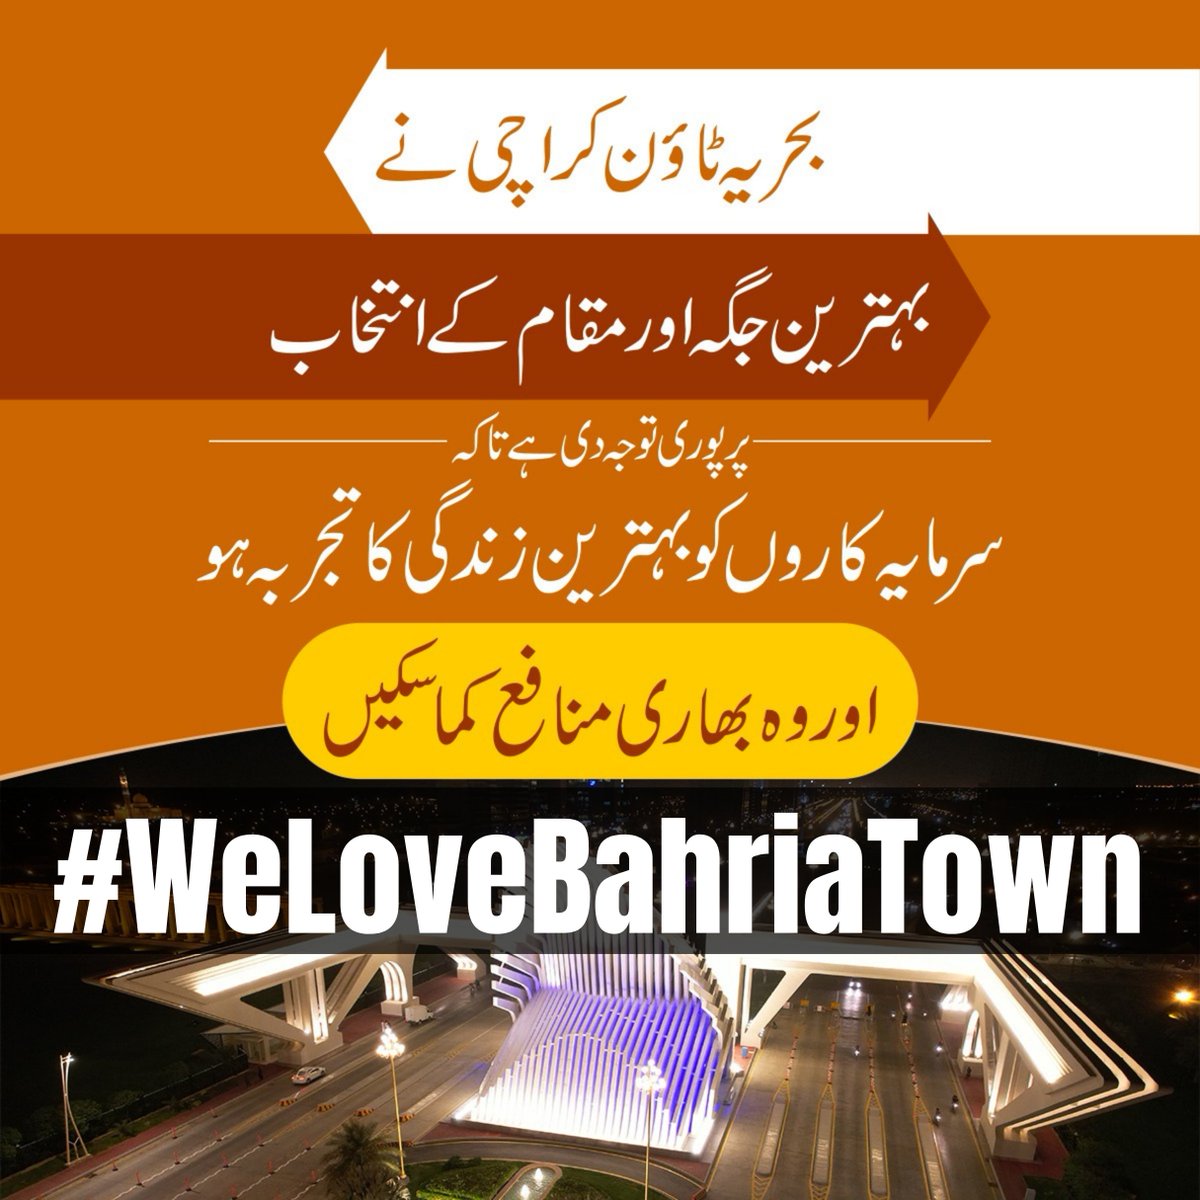 بحریہ ٹاؤن کراچی وہ جگہ ہے جس نے کراچی کے عوام کو پر آسائش زندگی جینے کی امنگ دی

#BahriaTownKarachi #BahriaTown #MalikRiaz
#WeLoveMalikRiaz #WeStandWithMalikRiaz
#WeLoveBahriaTown #WeStandWithBahriaTown